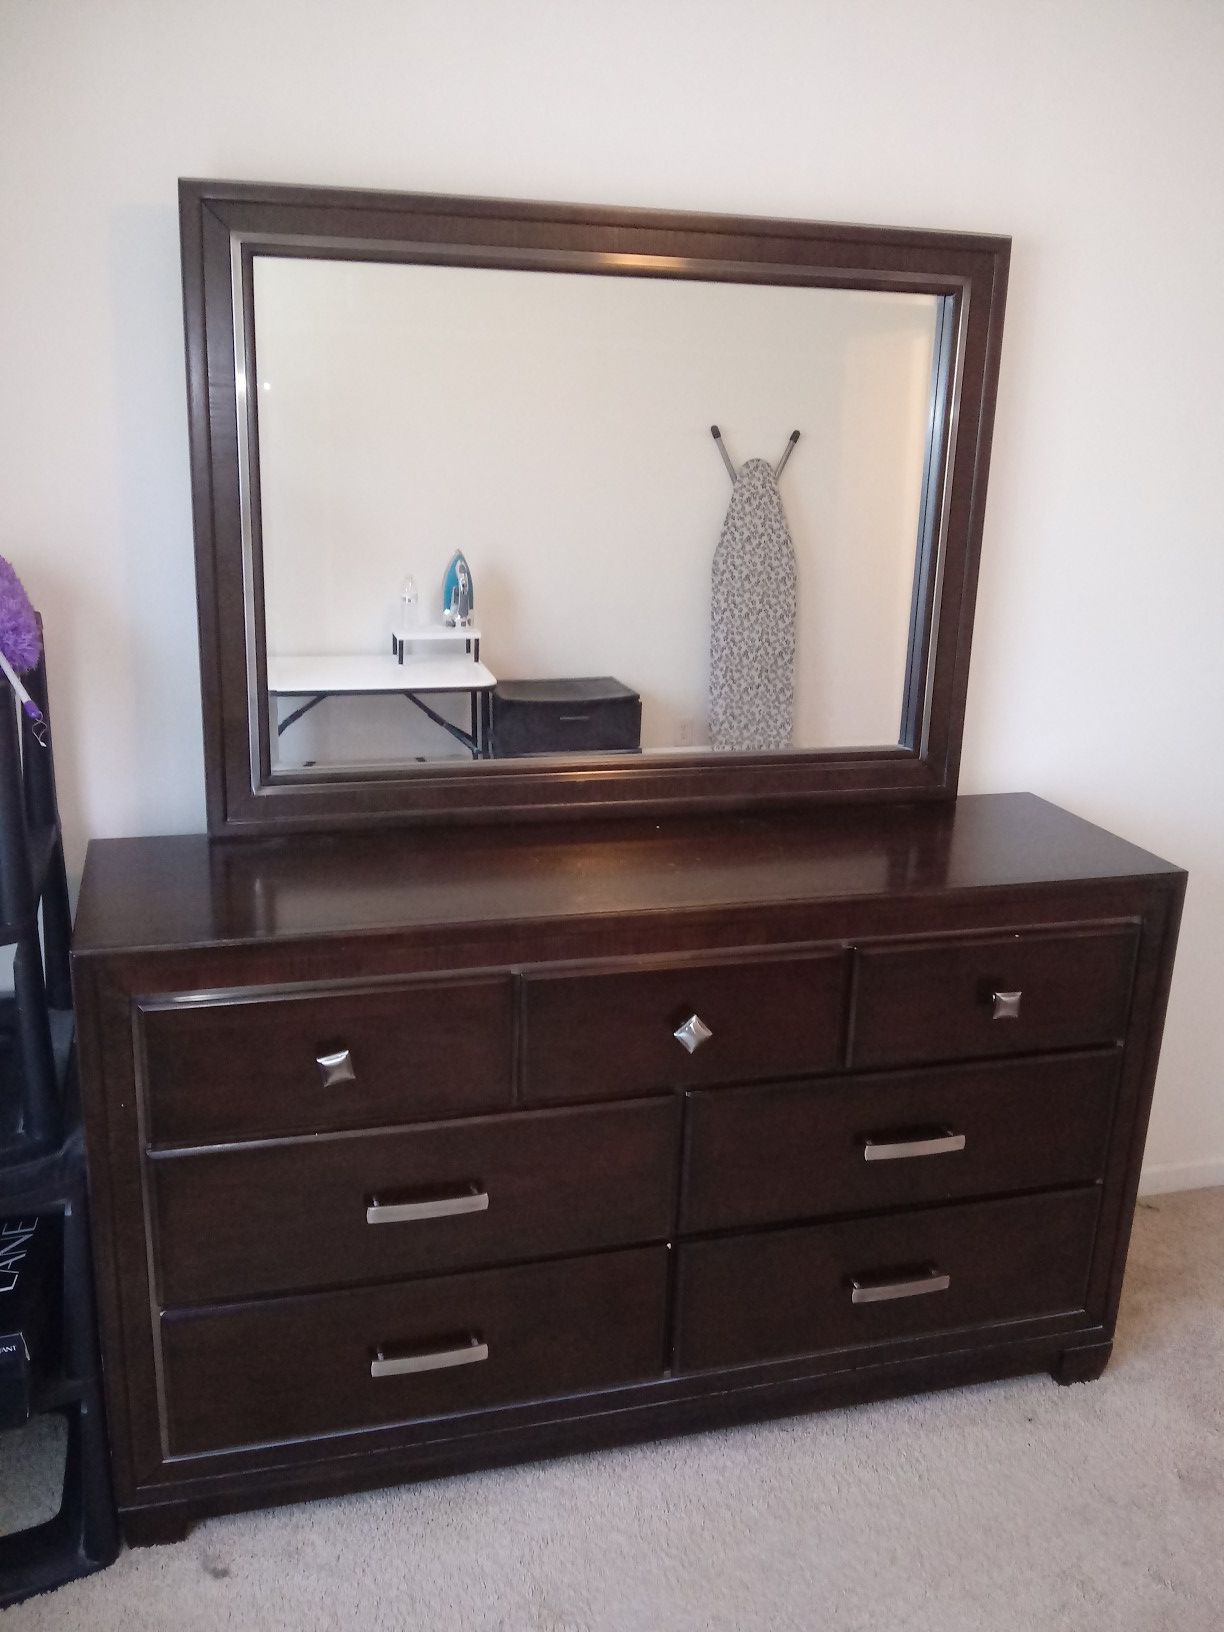 Ashley furniture dresser with mirror